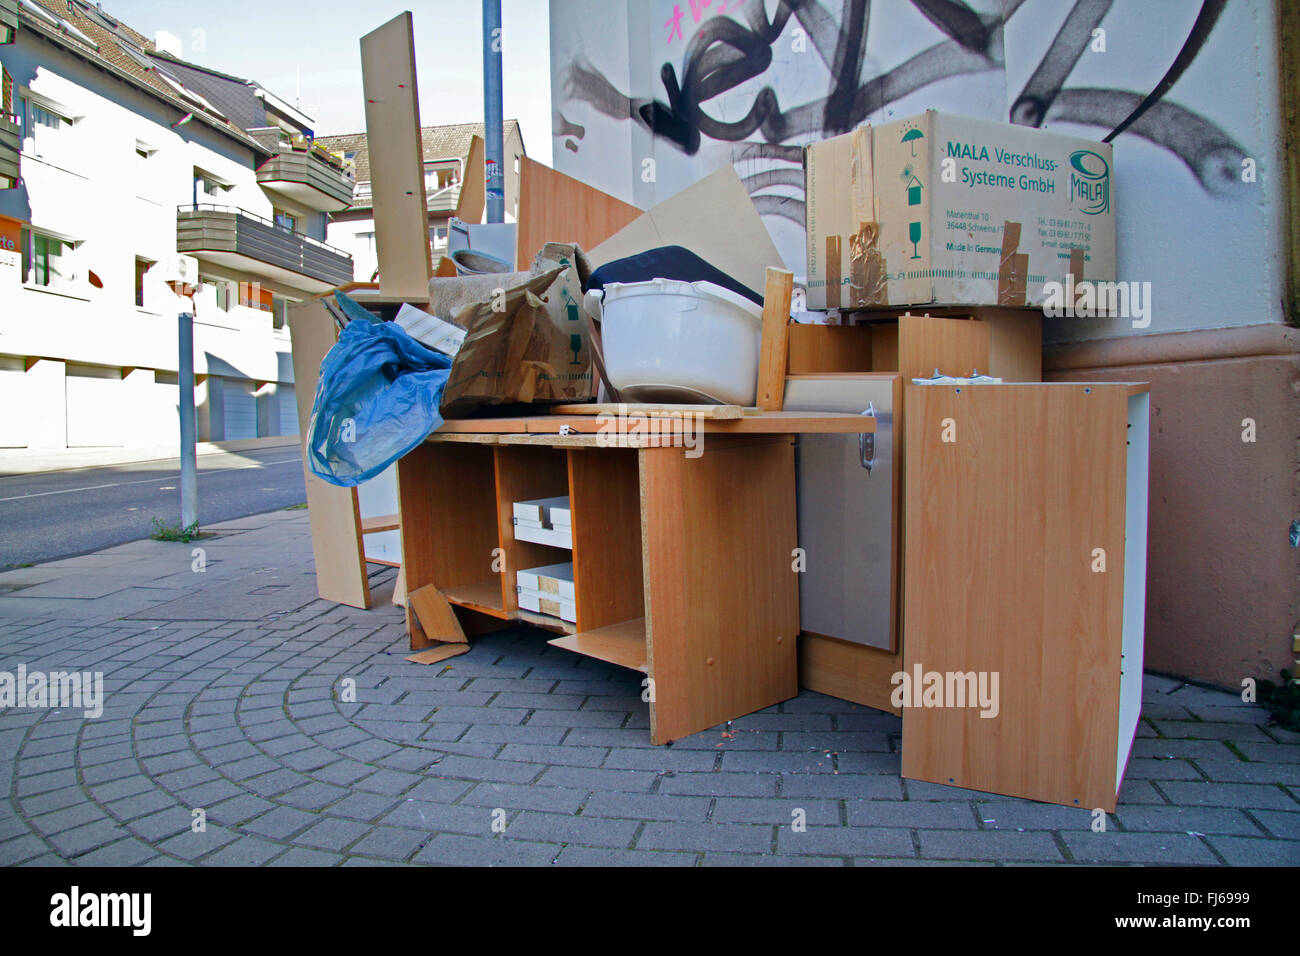 Grueso basura en la acera, Alemania Foto de stock